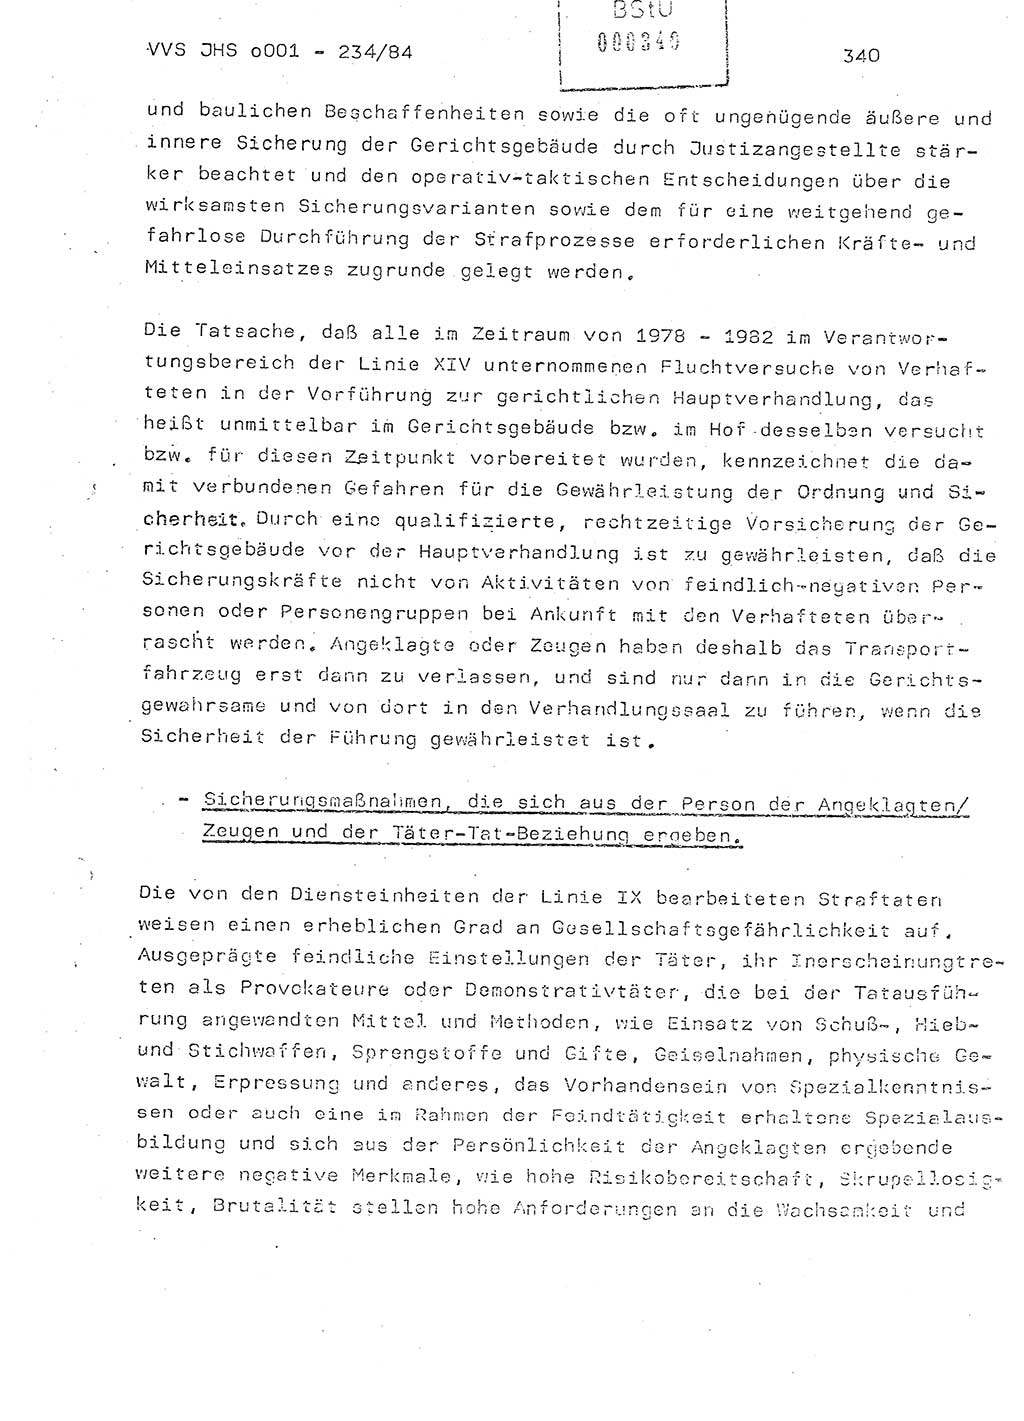 Dissertation Oberst Siegfried Rataizick (Abt. ⅩⅣ), Oberstleutnant Volkmar Heinz (Abt. ⅩⅣ), Oberstleutnant Werner Stein (HA Ⅸ), Hauptmann Heinz Conrad (JHS), Ministerium für Staatssicherheit (MfS) [Deutsche Demokratische Republik (DDR)], Juristische Hochschule (JHS), Vertrauliche Verschlußsache (VVS) o001-234/84, Potsdam 1984, Seite 340 (Diss. MfS DDR JHS VVS o001-234/84 1984, S. 340)